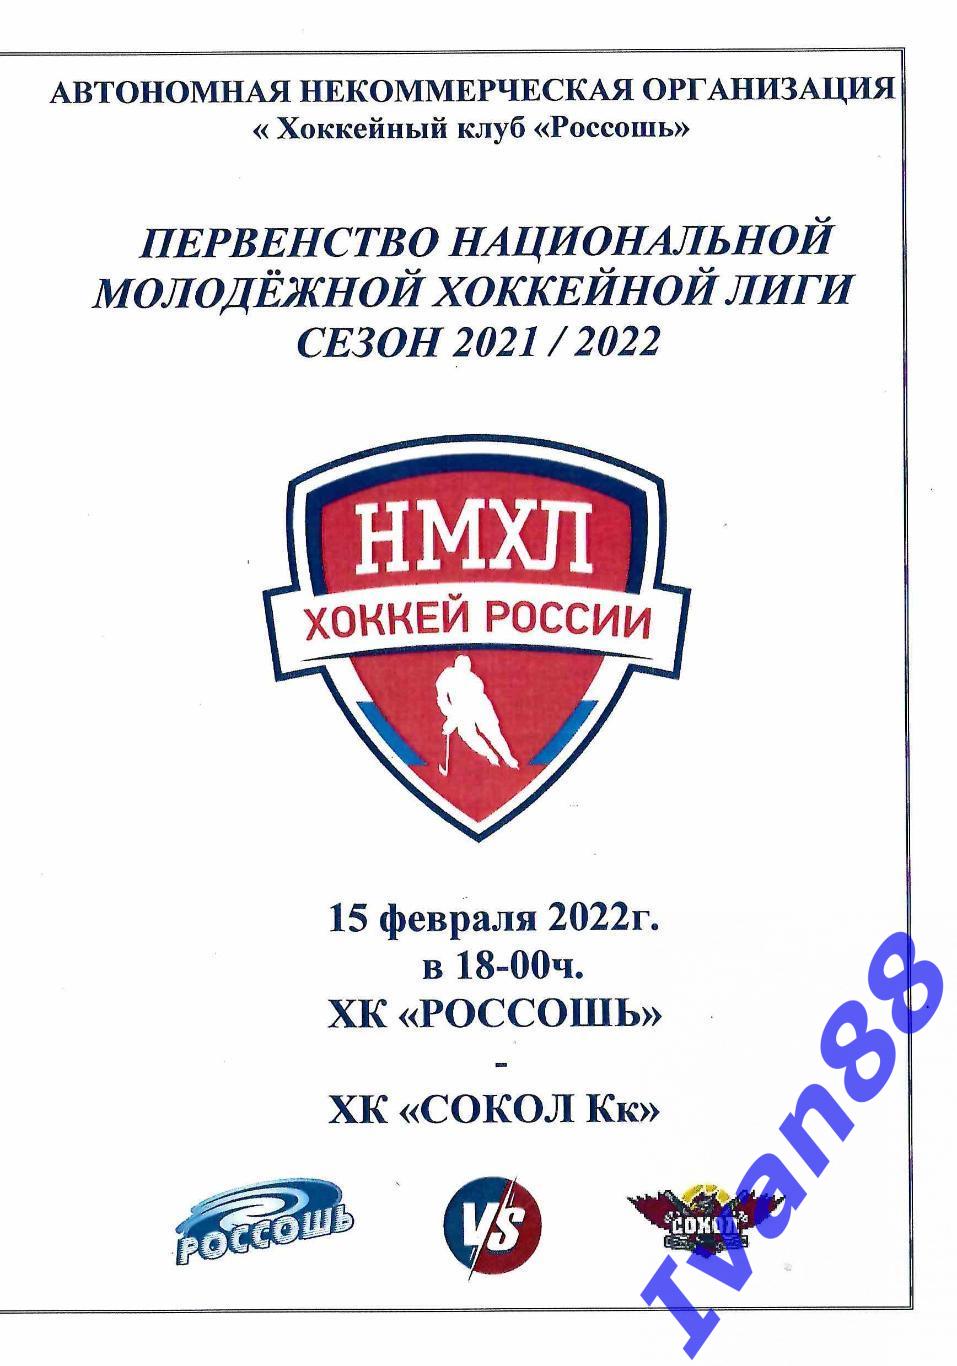 ХК Россошь - Сокол Курск 15 февраля 2022